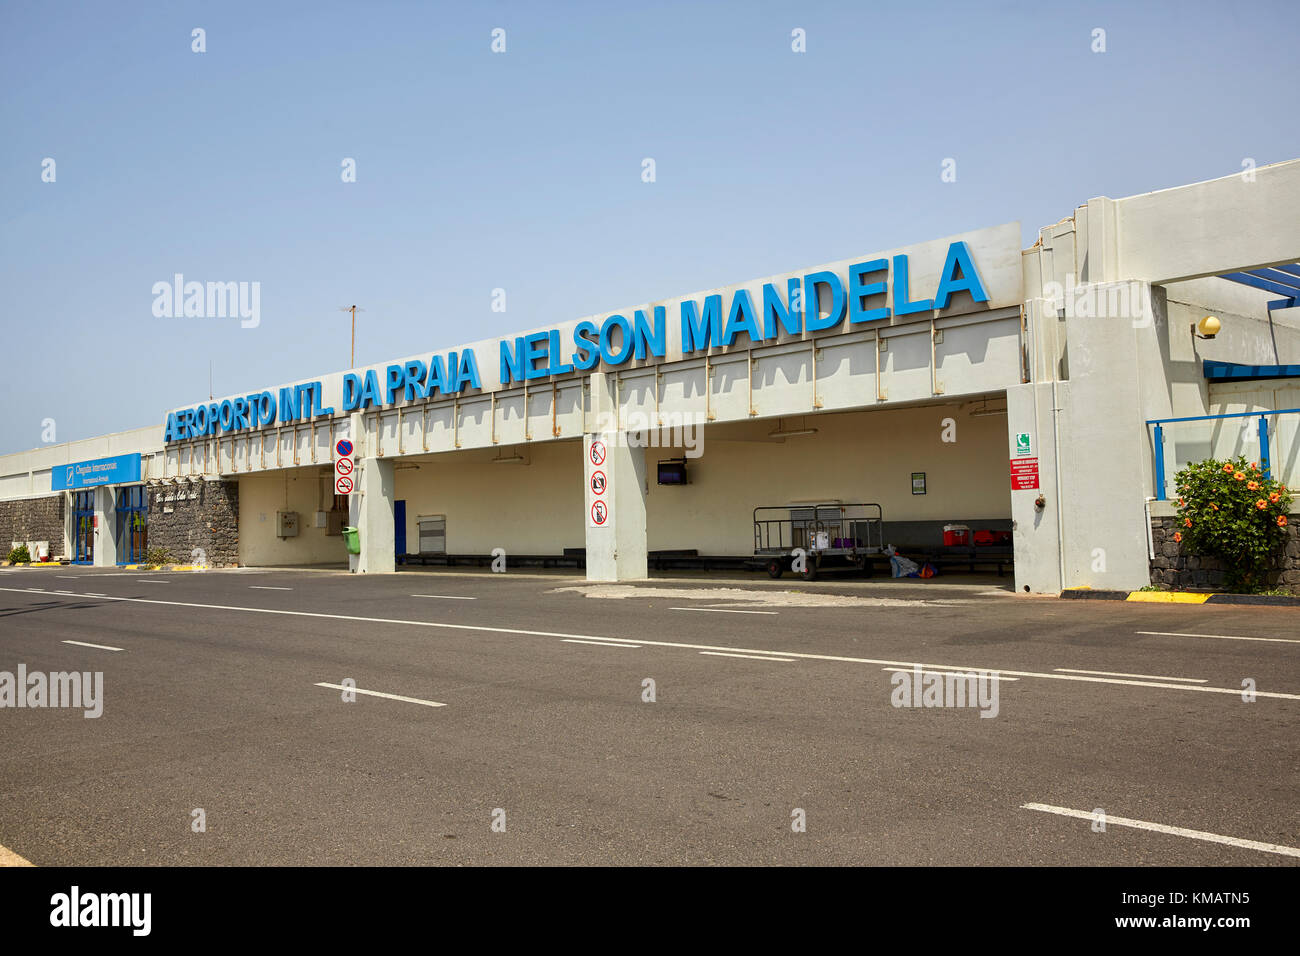 Aeroporto Internazionale di da Praia Nelson Mandela (Nelson Mandela International Airport), Praia, Santiago, Capo Verde (Cabo Verde) Foto Stock